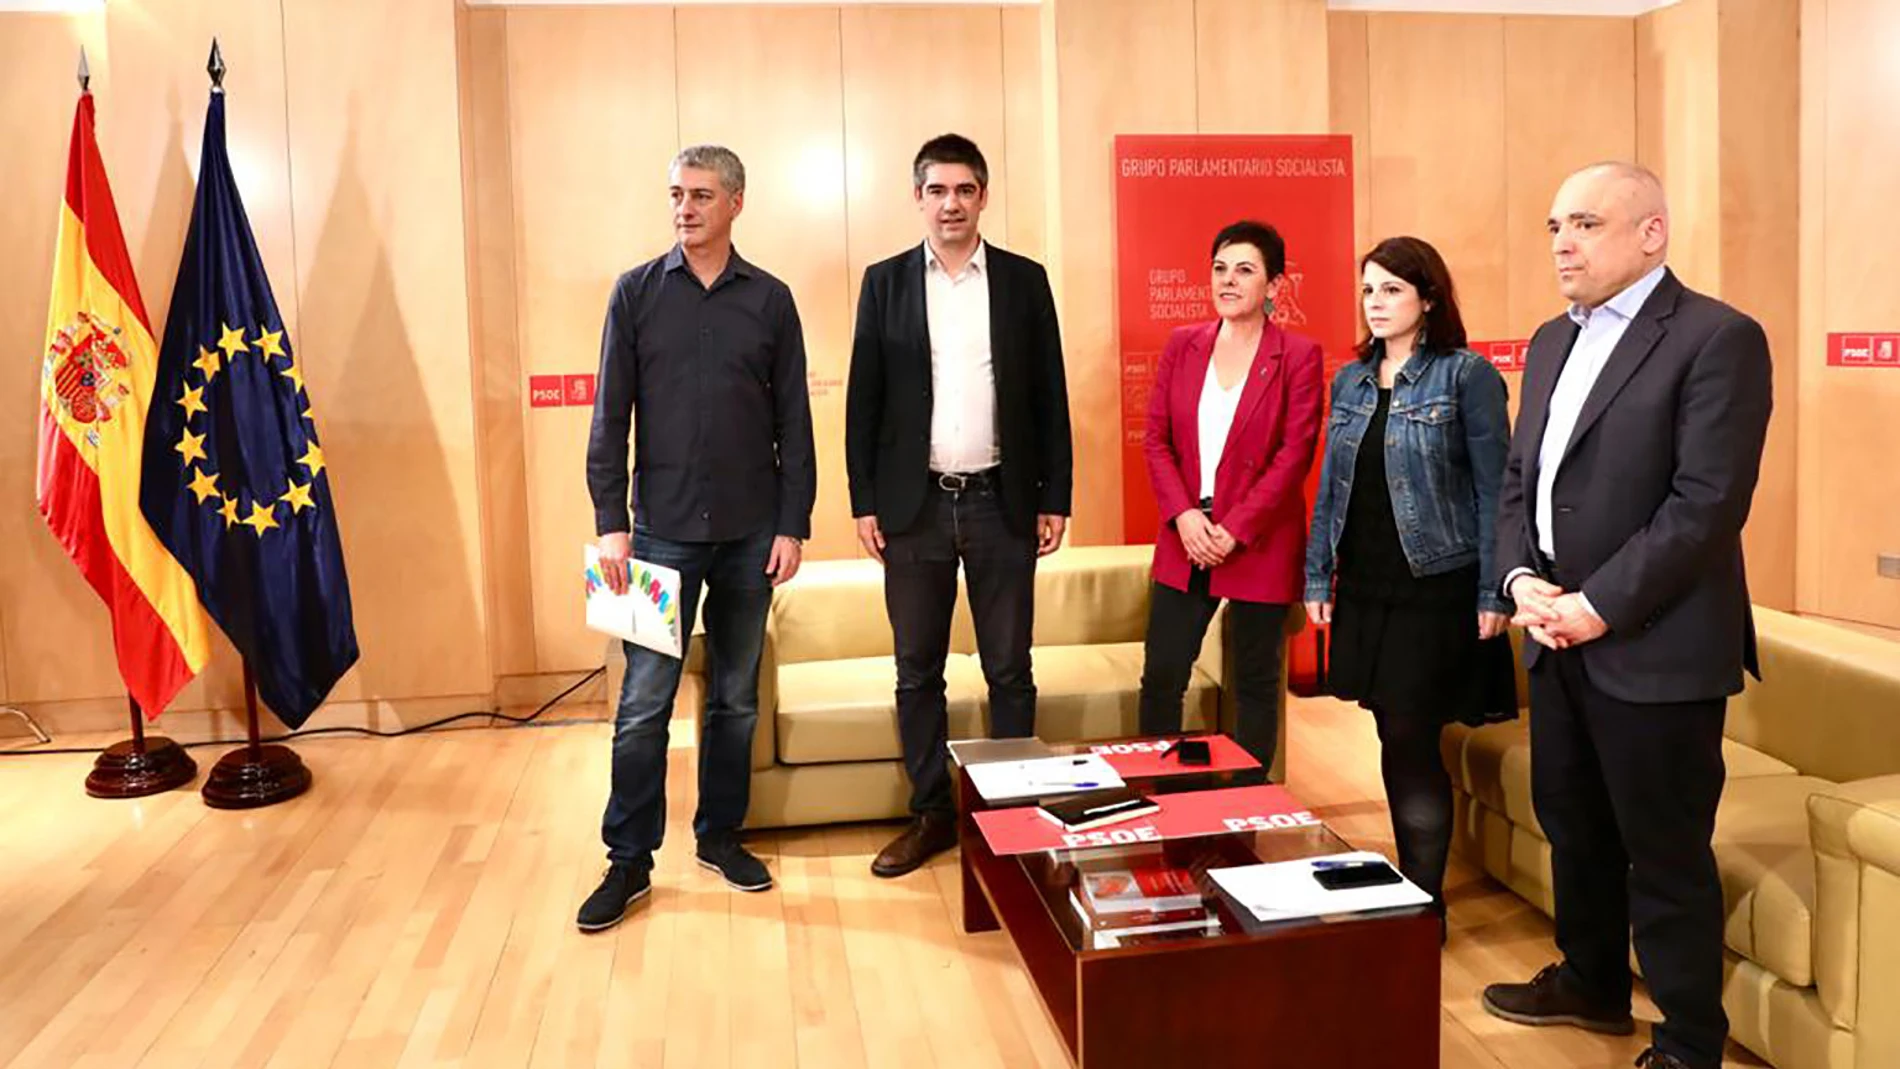 Nuevas conversaciones del PSOE con representantes de varios partidos para hacer efectiva la investidura de Sánchez